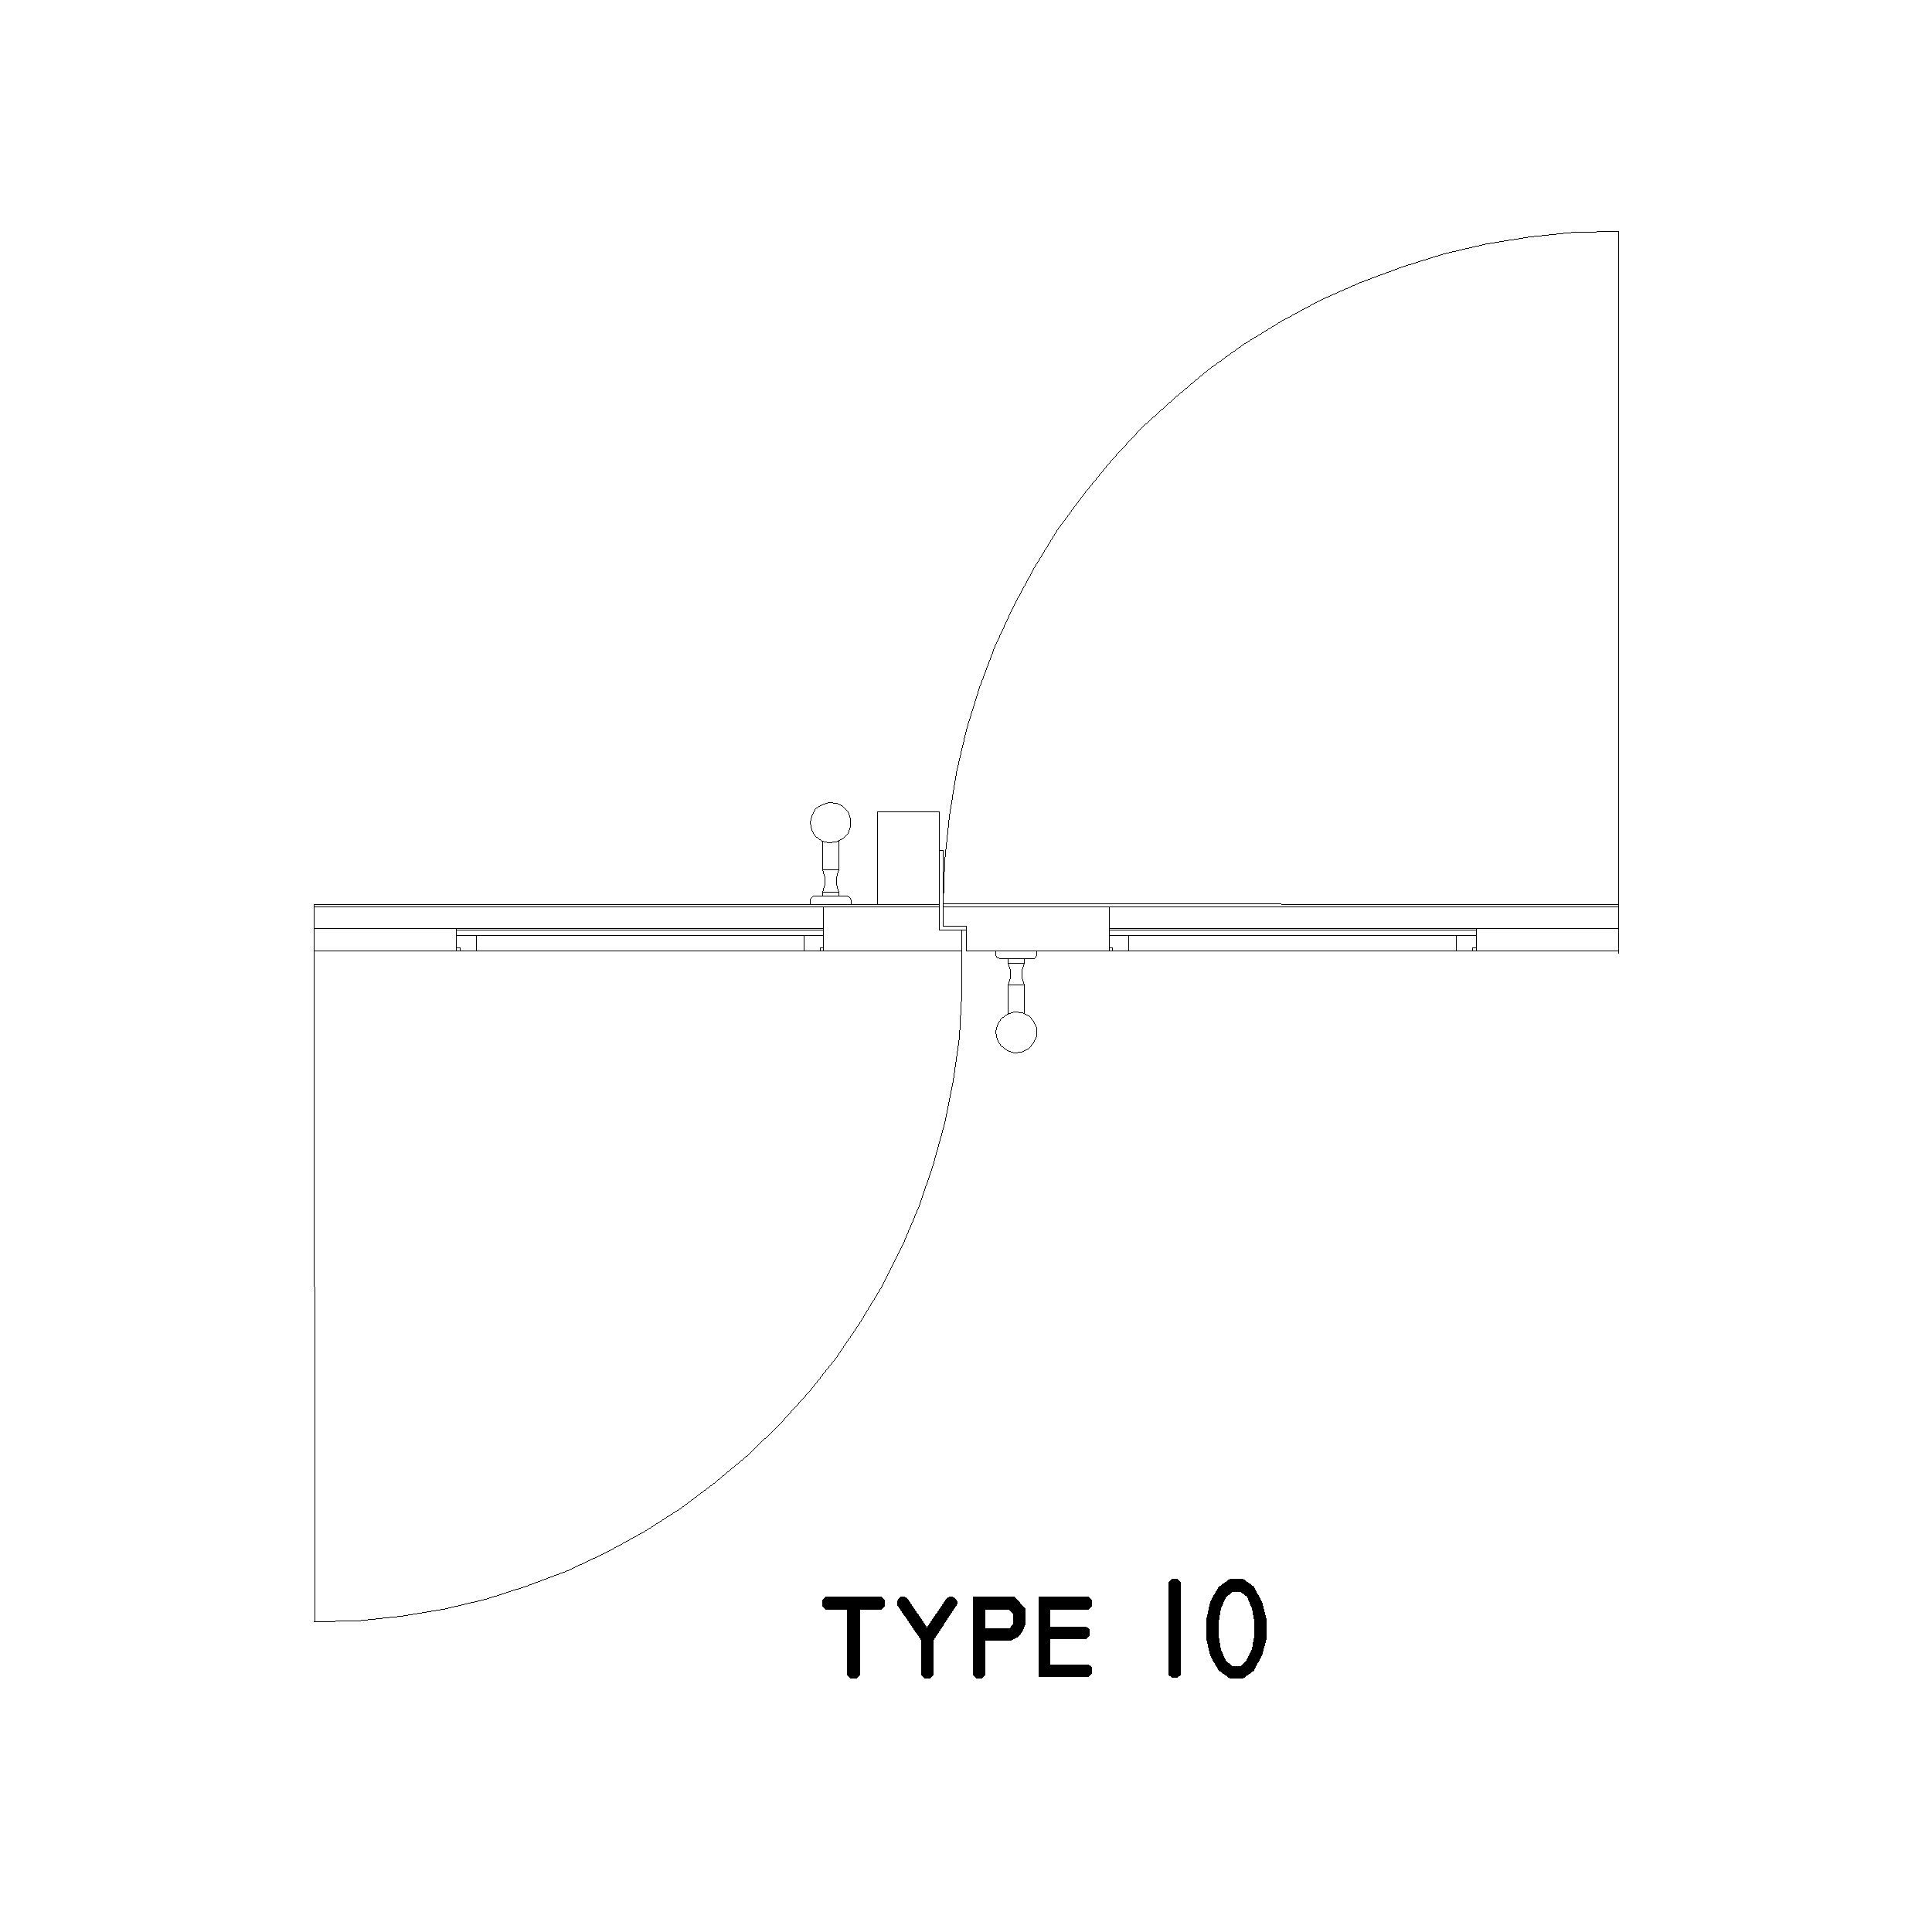 Type 10 Door Plan: 2D Top View Plan - Cadblockdwg